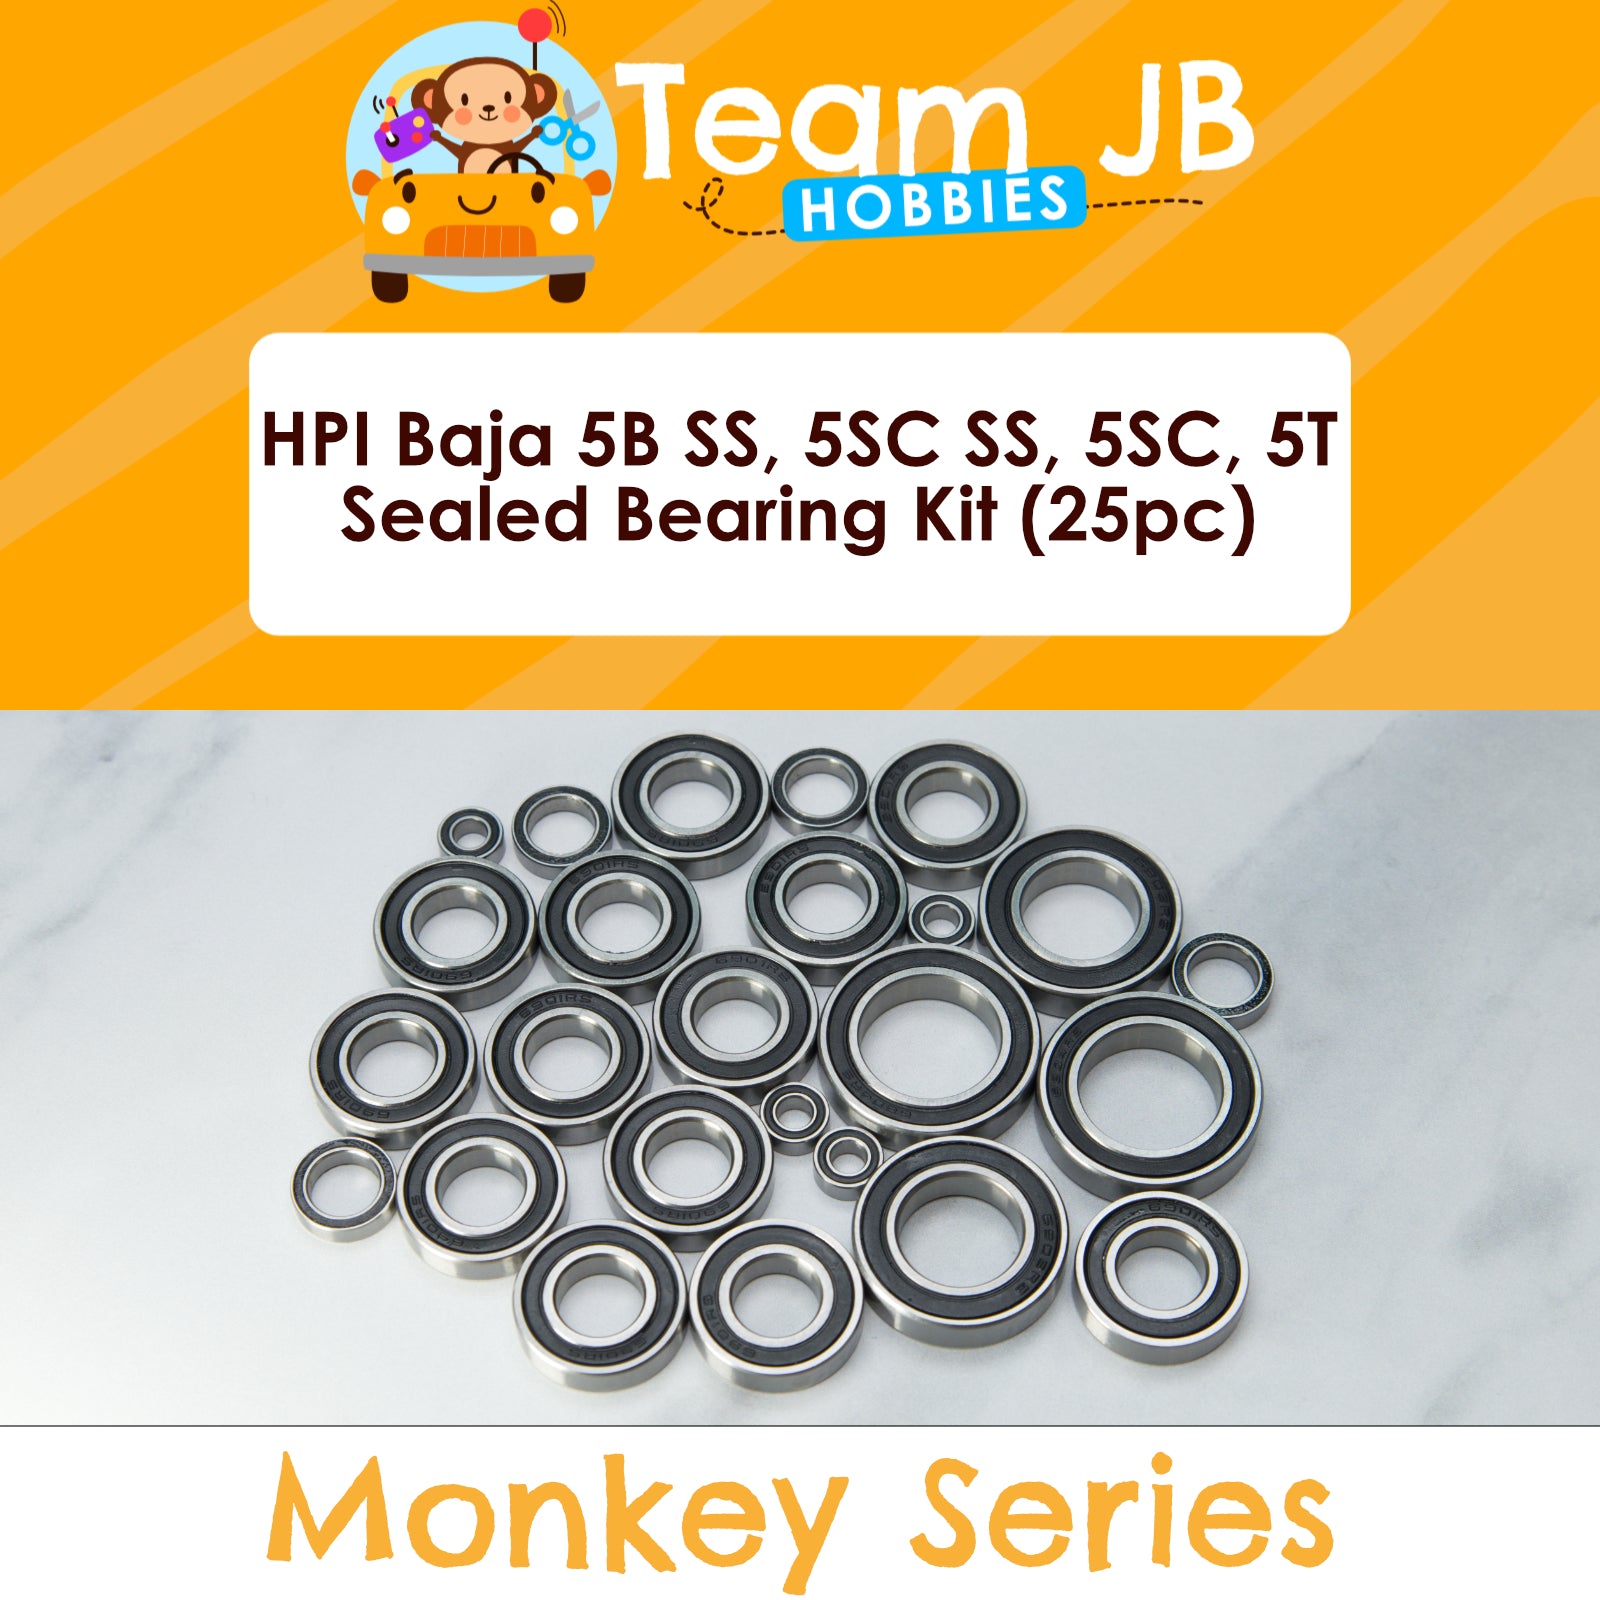 HPI Baja 5B SS, 5SC SS, 5SC, 5T - Sealed Bearing Kit